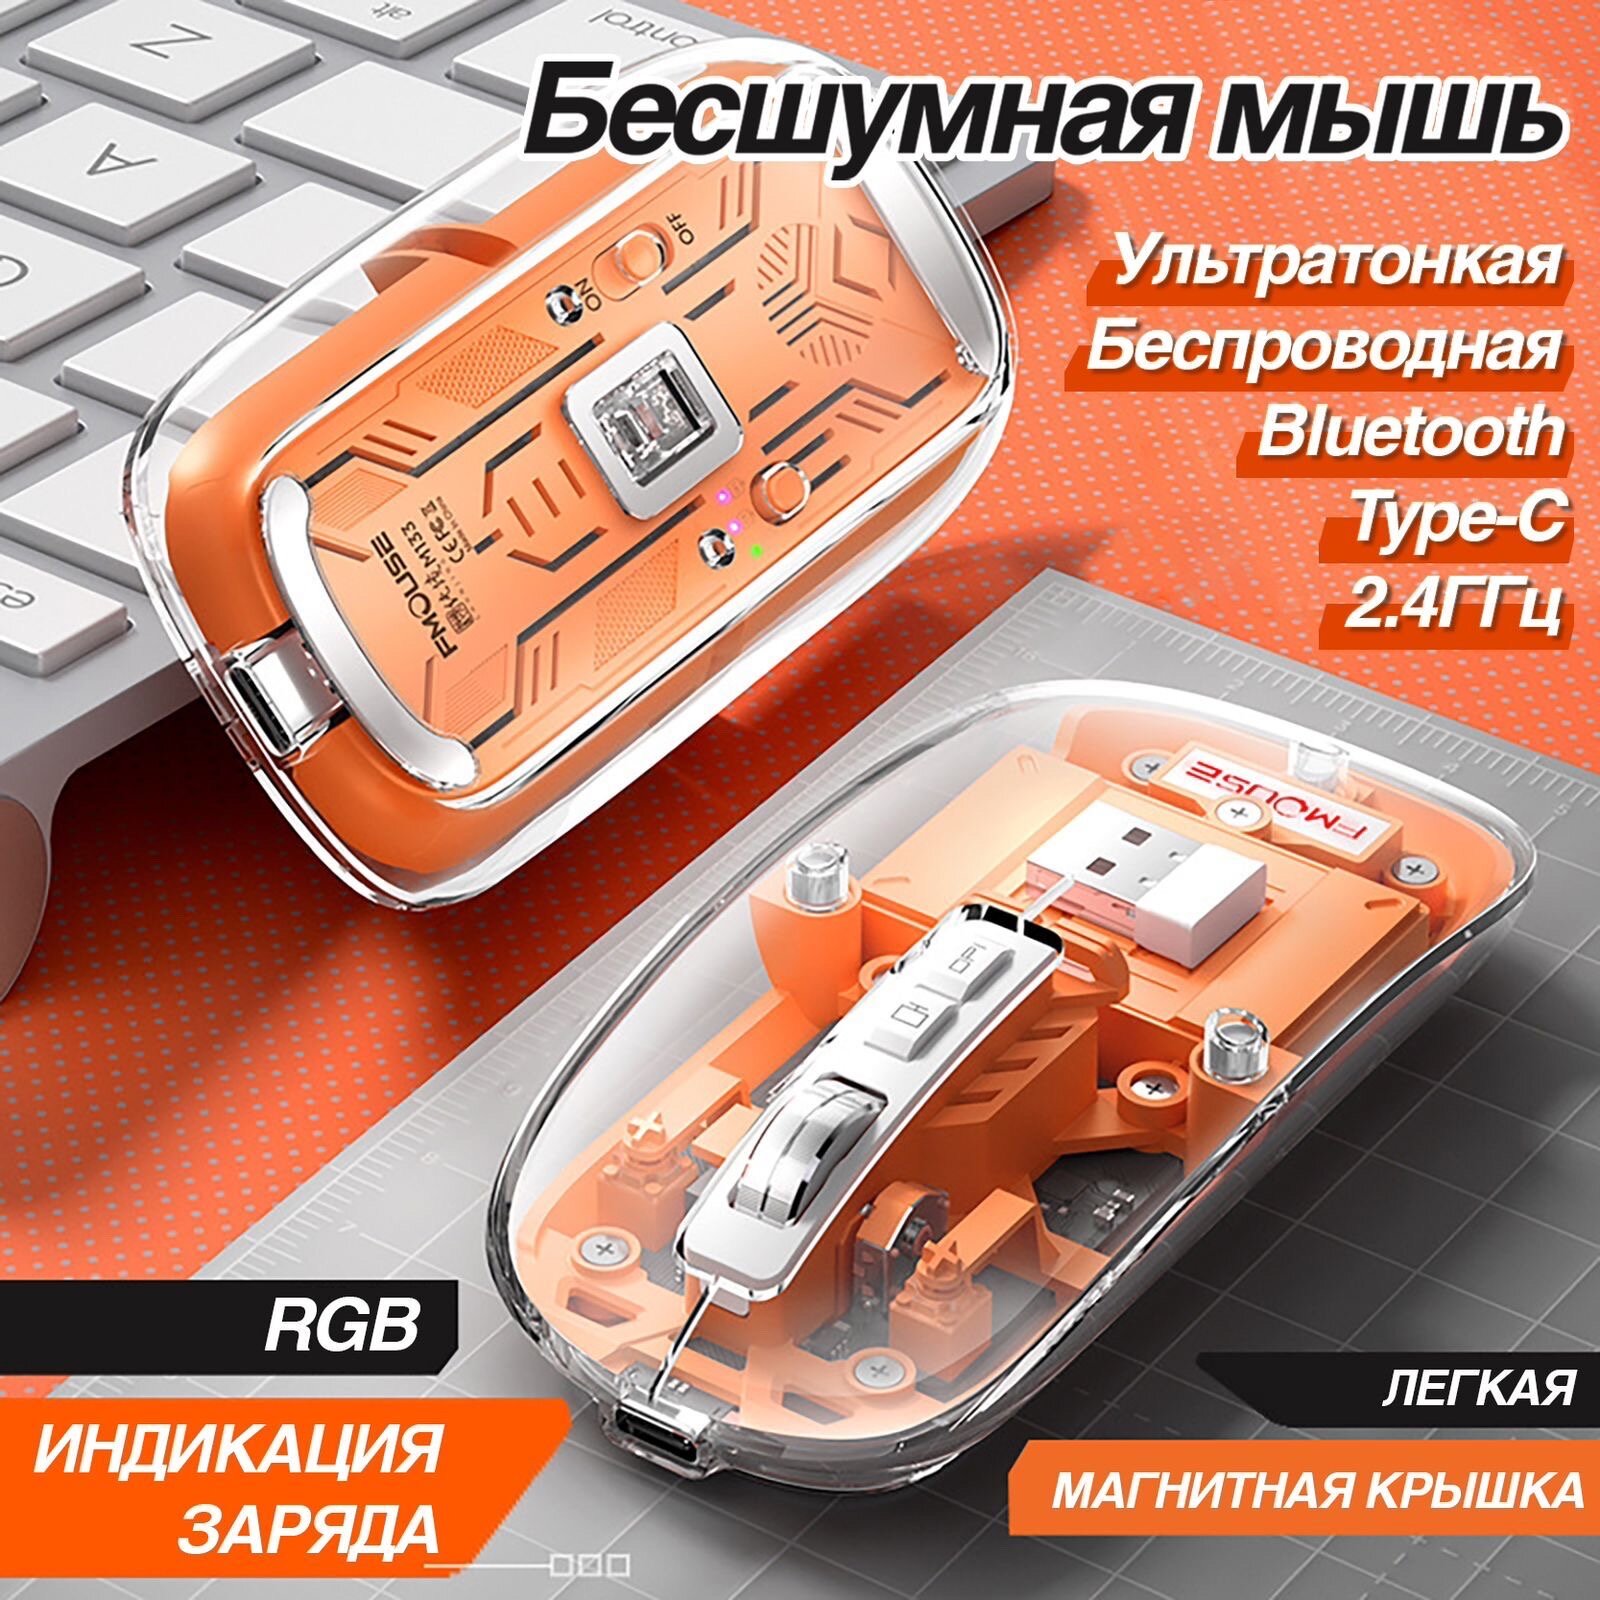 Мышь беспроводная FMOUSE M133 прозрачная с магнитной крышкой, Оранжевая